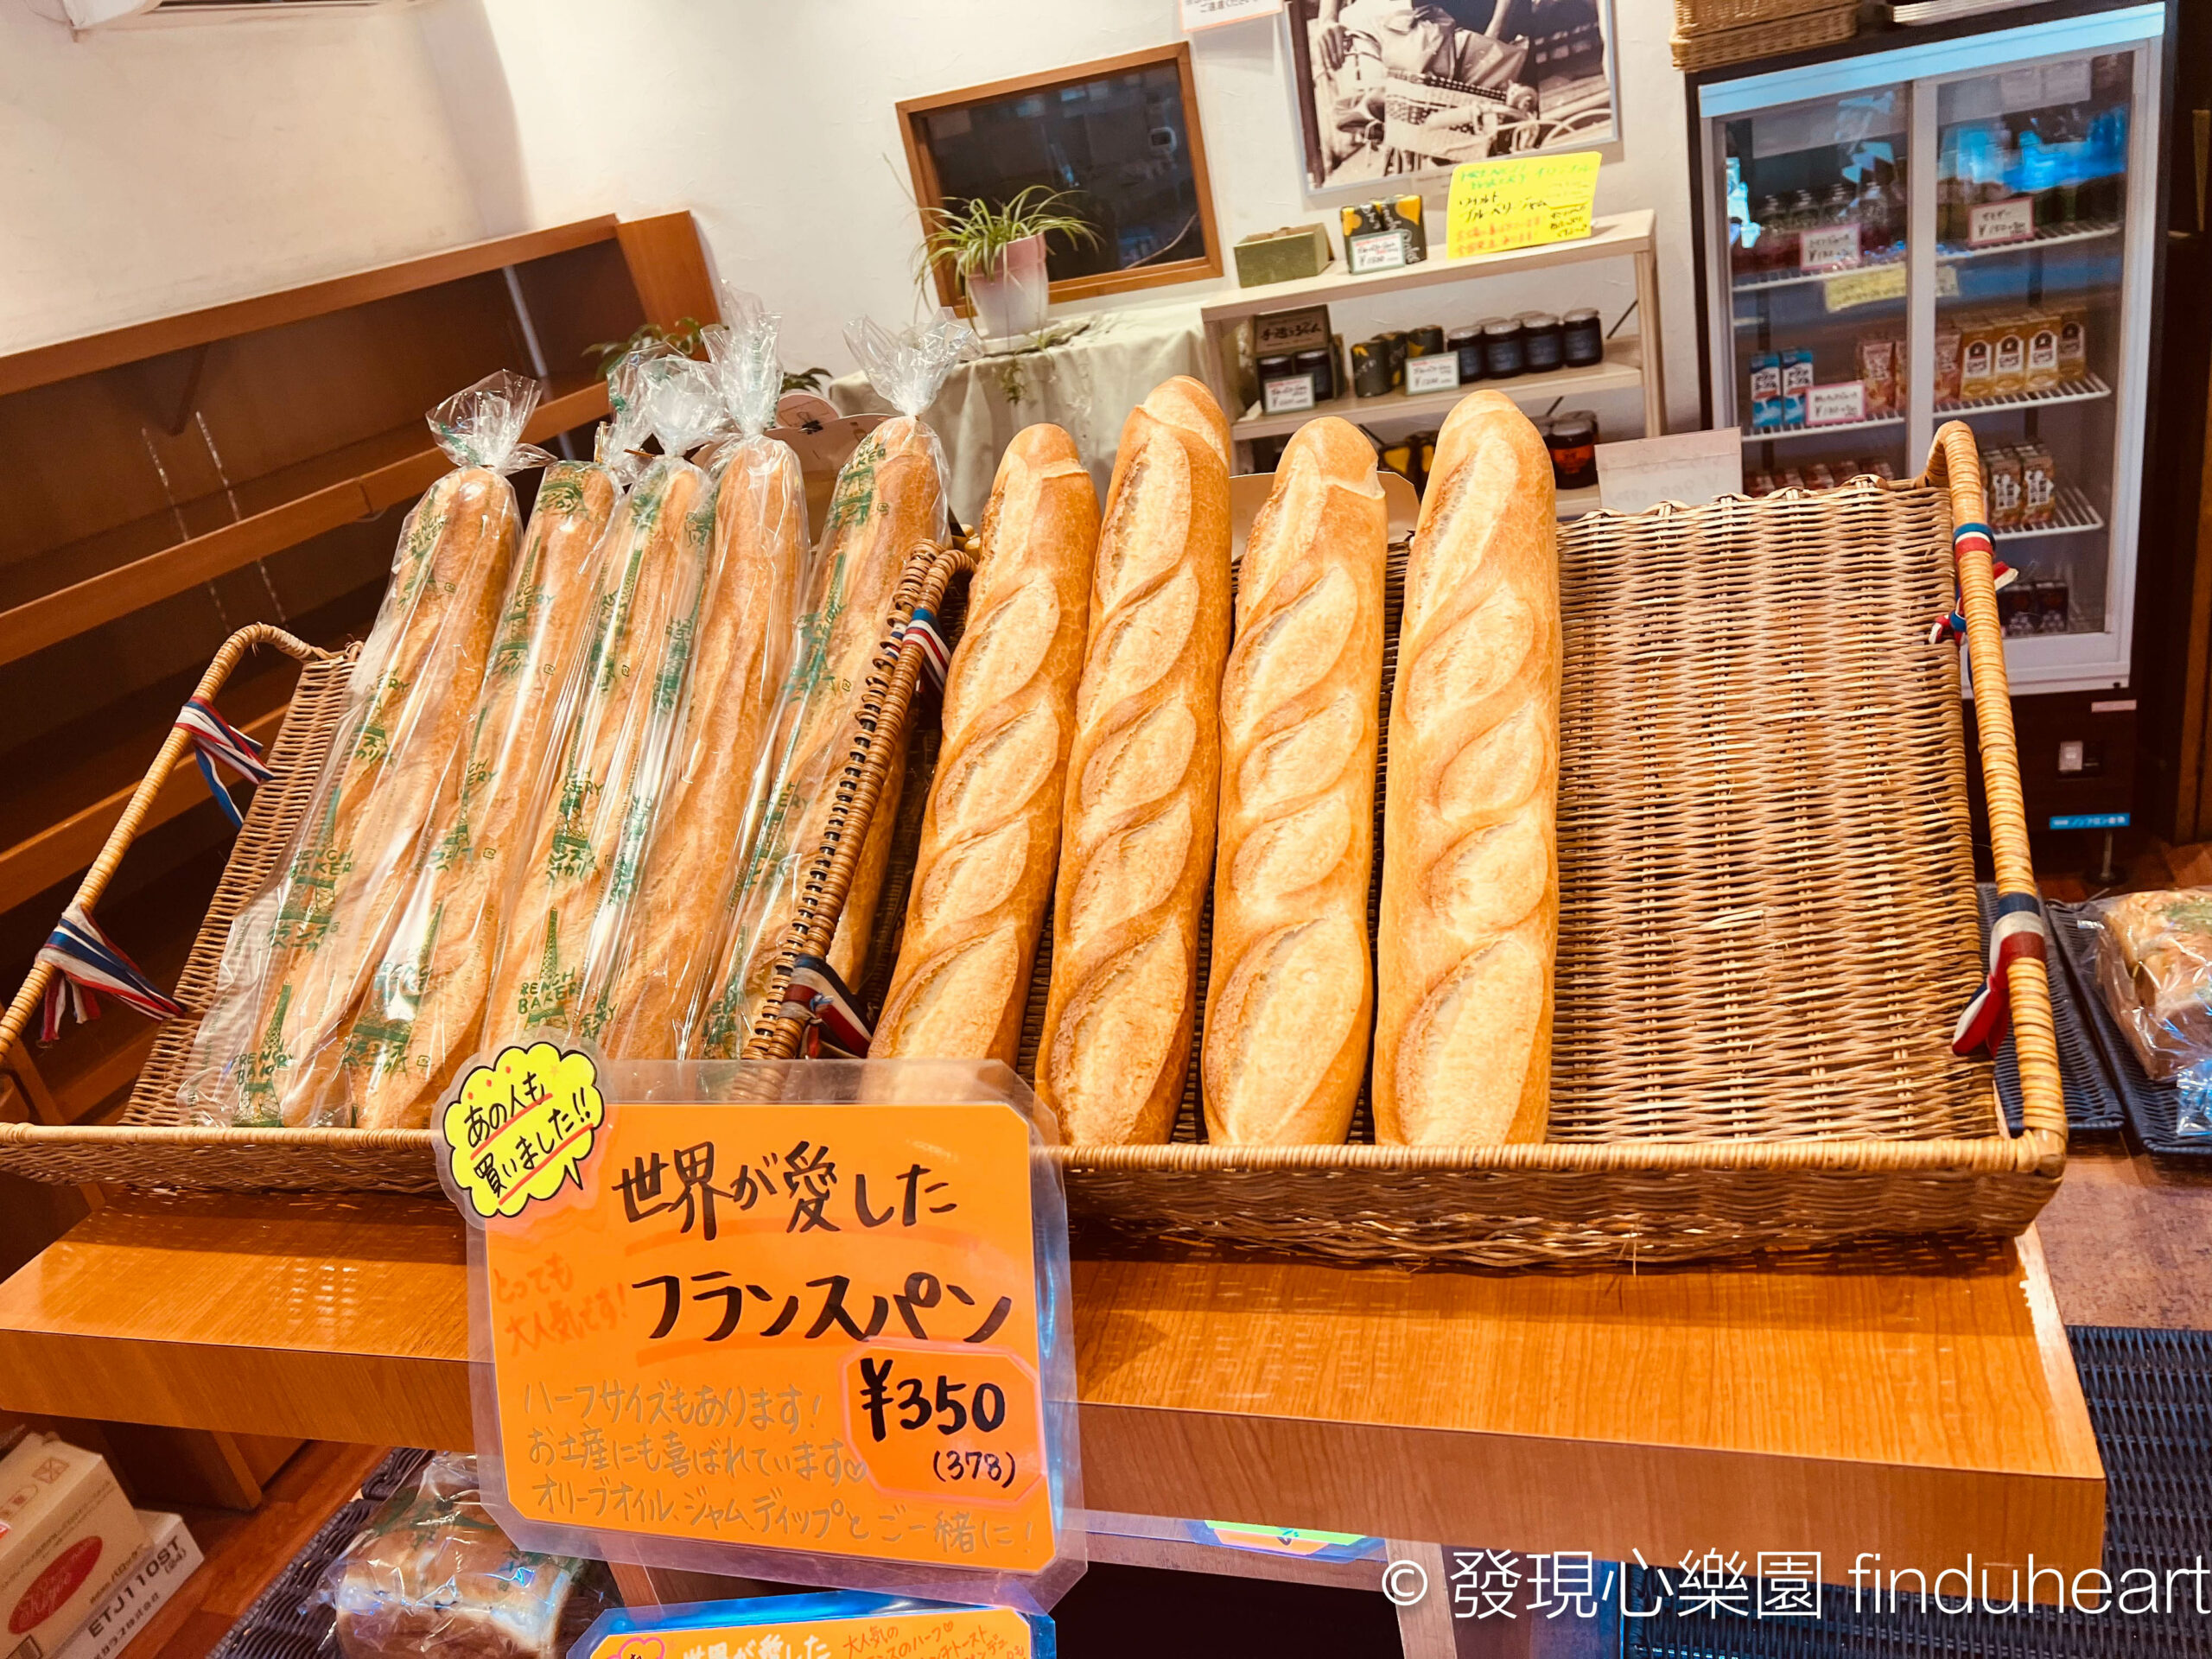 輕井澤Karuizawa French Bakery(フランスベーカリー)，披頭四合唱團主唱約翰藍儂最愛的法國麵包